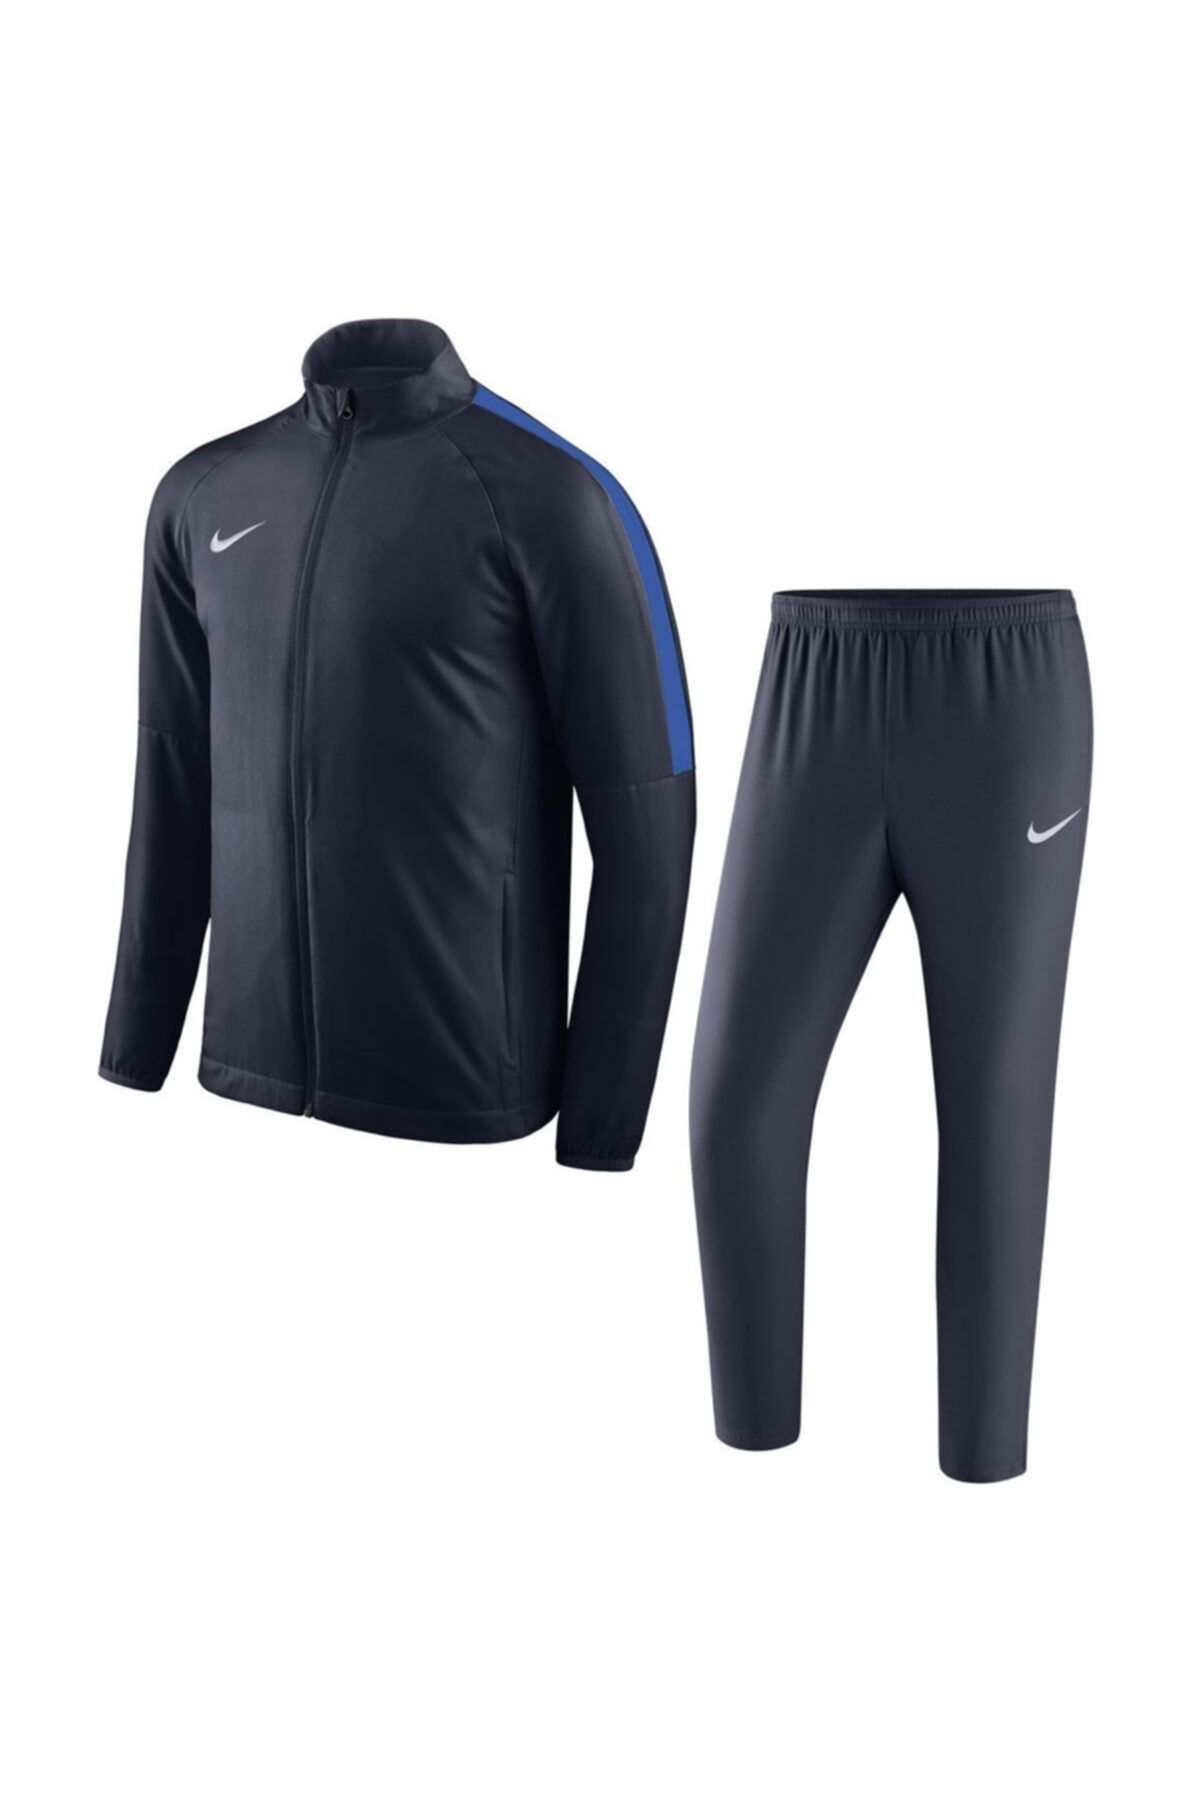 Nike Dry Academy 18 Trk Suit Wvn 893709-451 Eşofman Takım